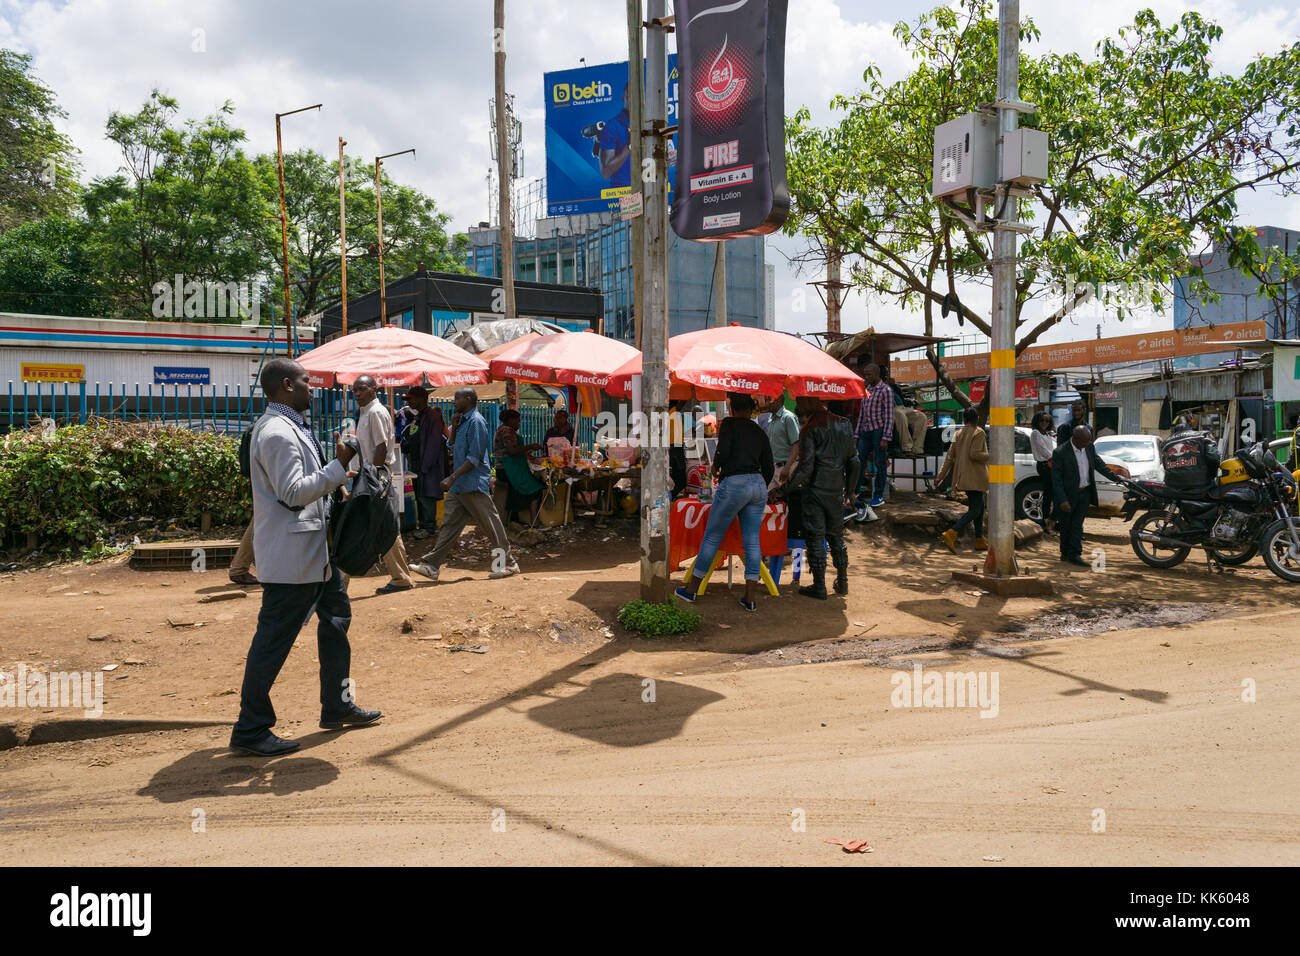 Tipica scena di strada di Nairobi con ombreggiato bancarelle che vendono merci e persone camminando sul marciapiede, Kenya, Africa orientale Foto Stock